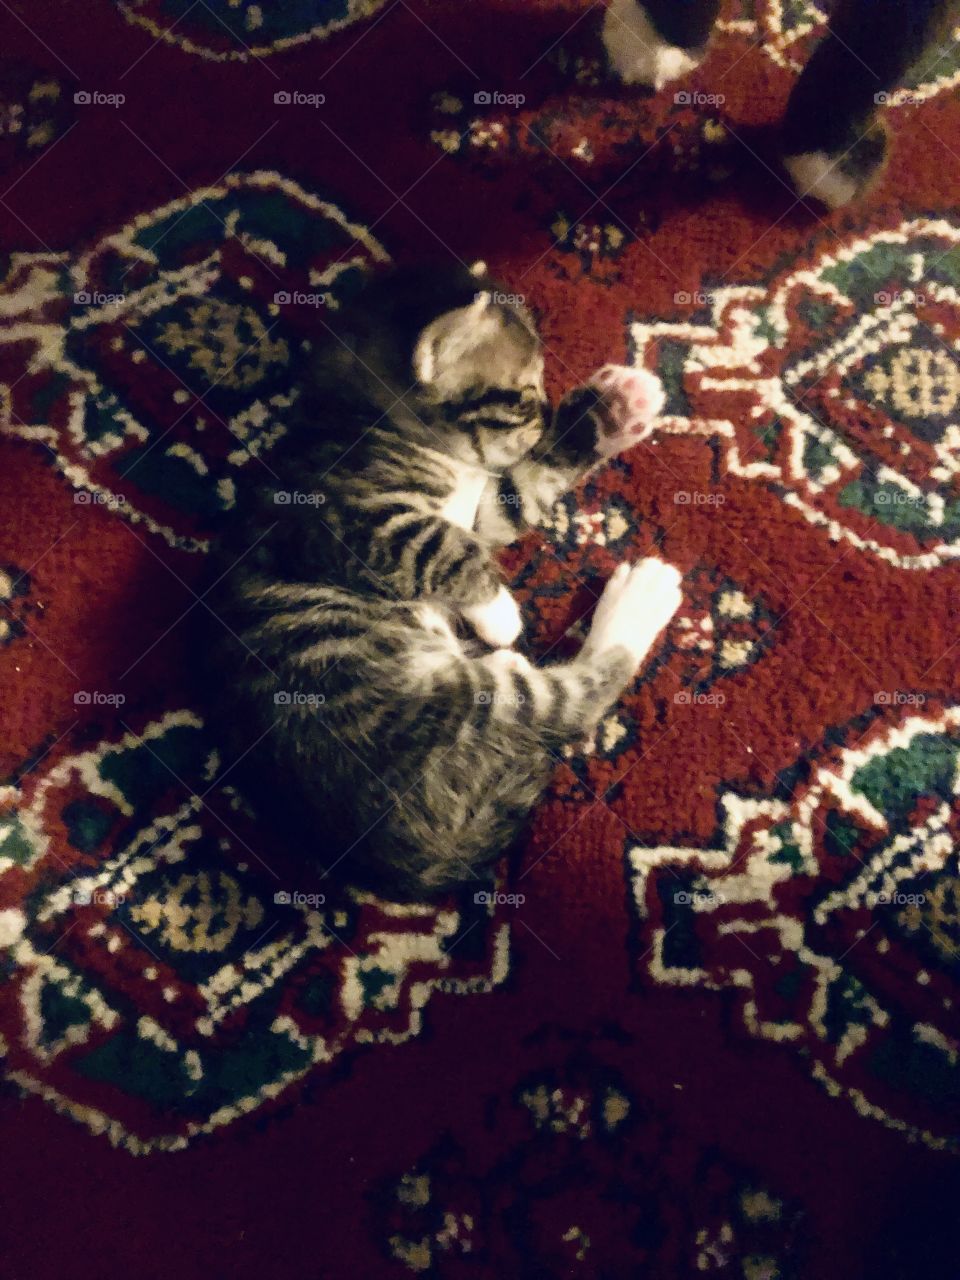 Kitten sleeping on the carpet 